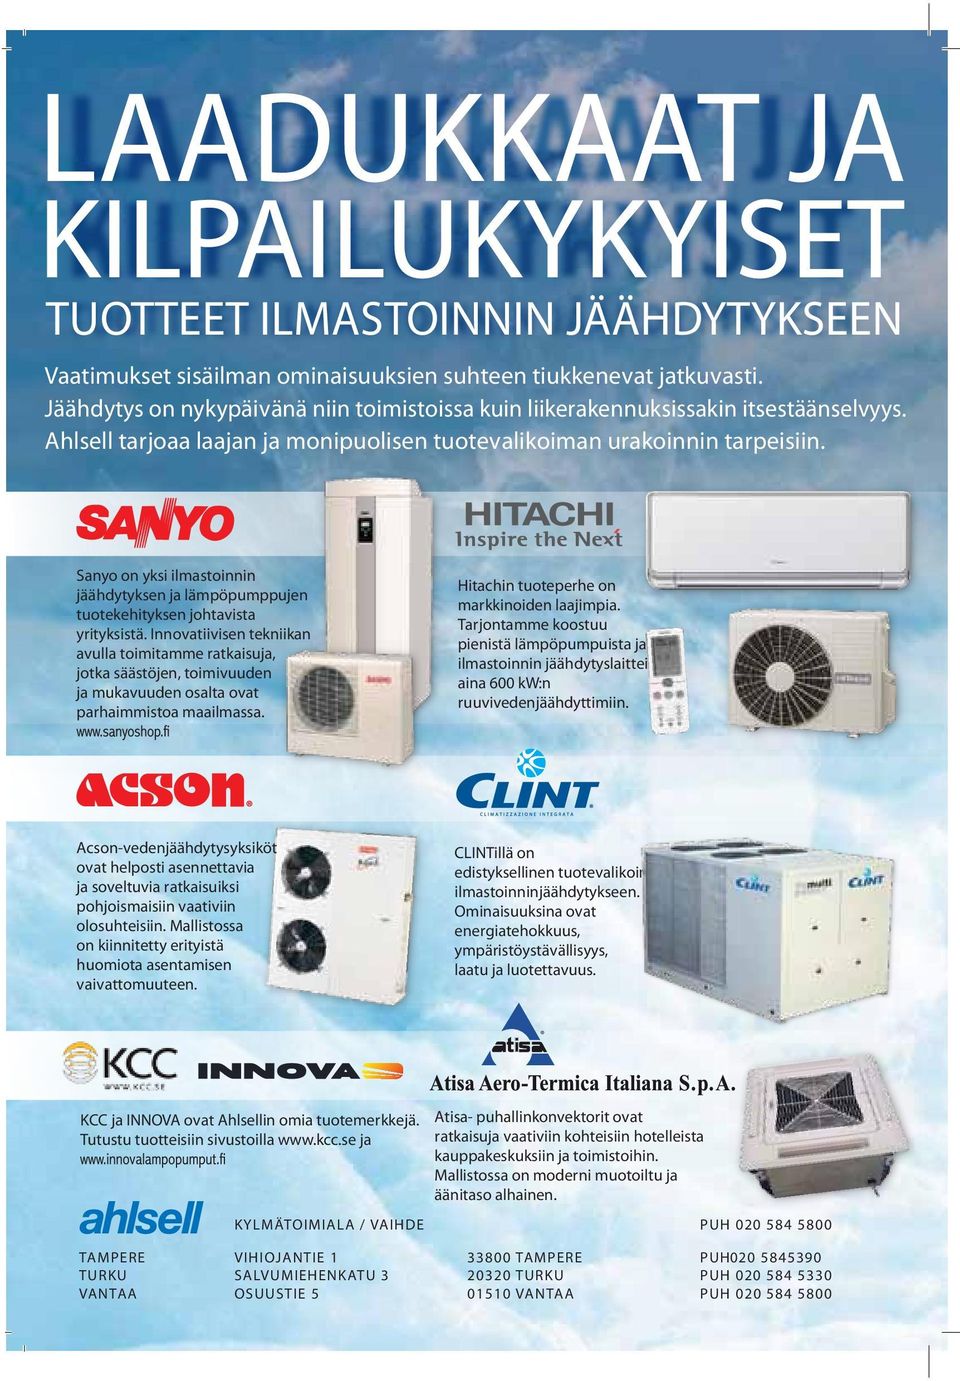 Sanyo on yksi ilmastoinnin jäähdytyksen ja lämpöpumppujen tuotekehityksen johtavista yrityksistä.